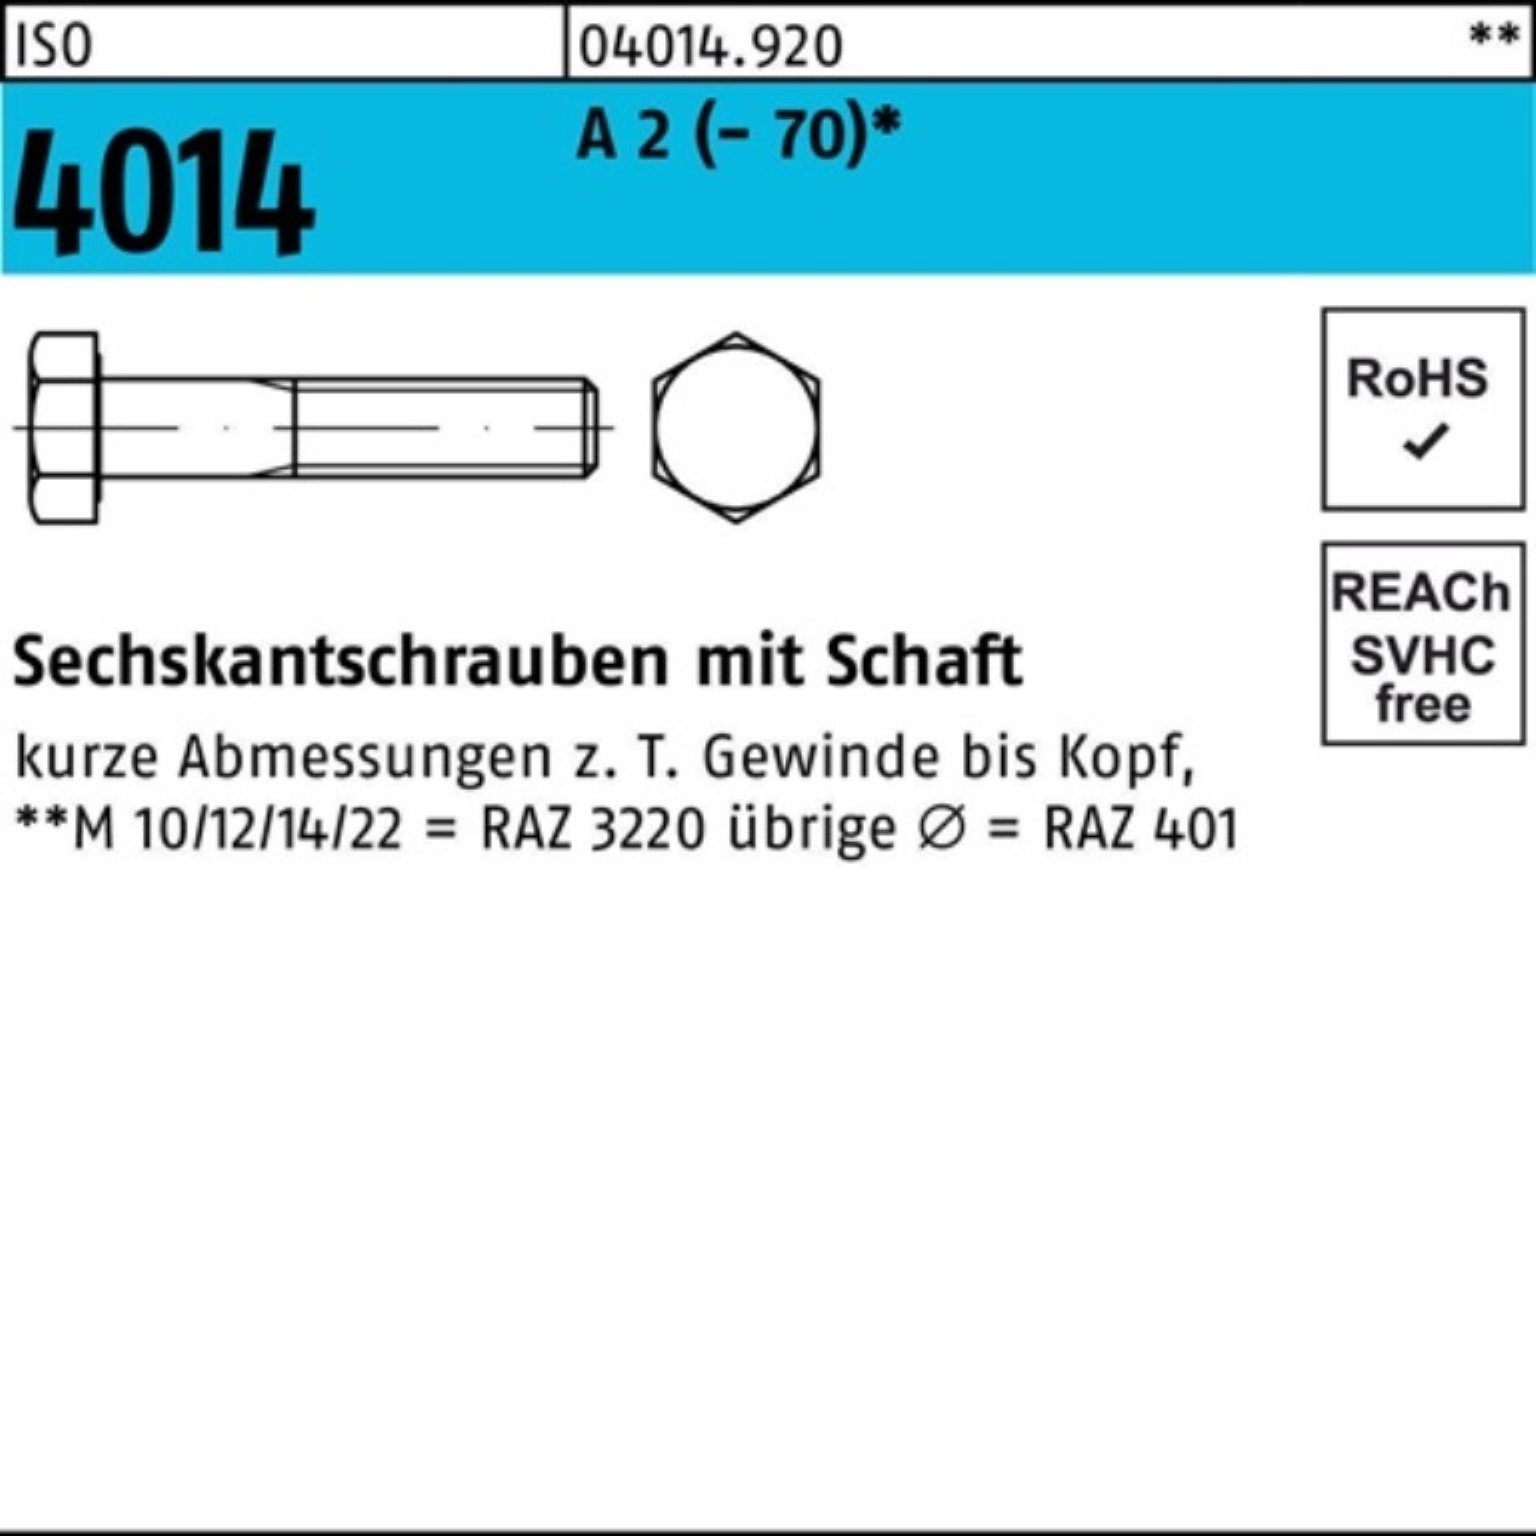 Bufab Sechskantschraube 100er Pack Sechskantschraube ISO 4014 Schaft M24x 130 A 2 (70) 1 St